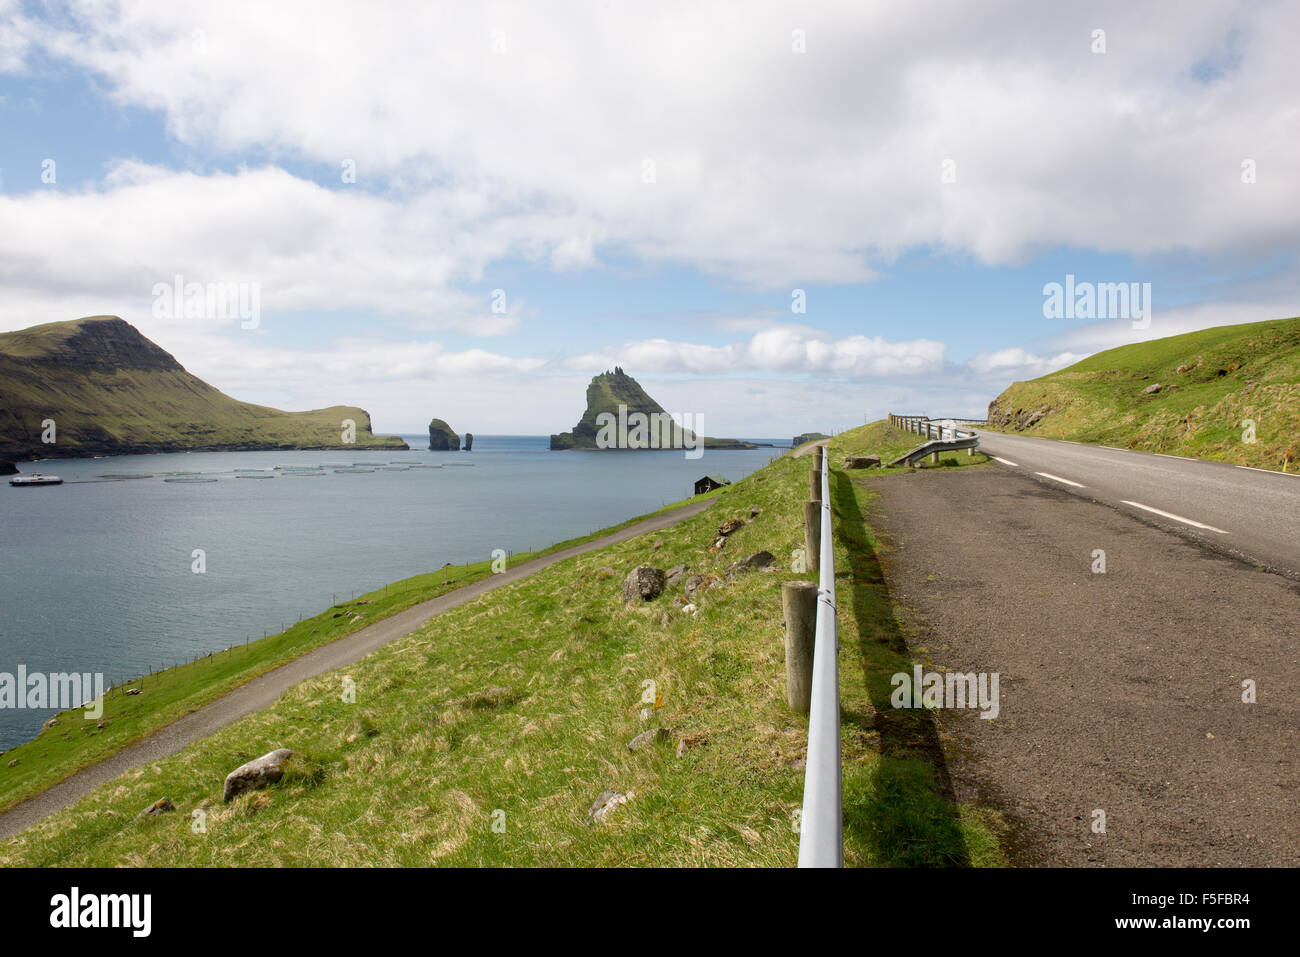 L'isola gasholmur sulle isole Faerøer con allevamento di salmoni come si vede da una strada a funzionario ministeriale Foto Stock